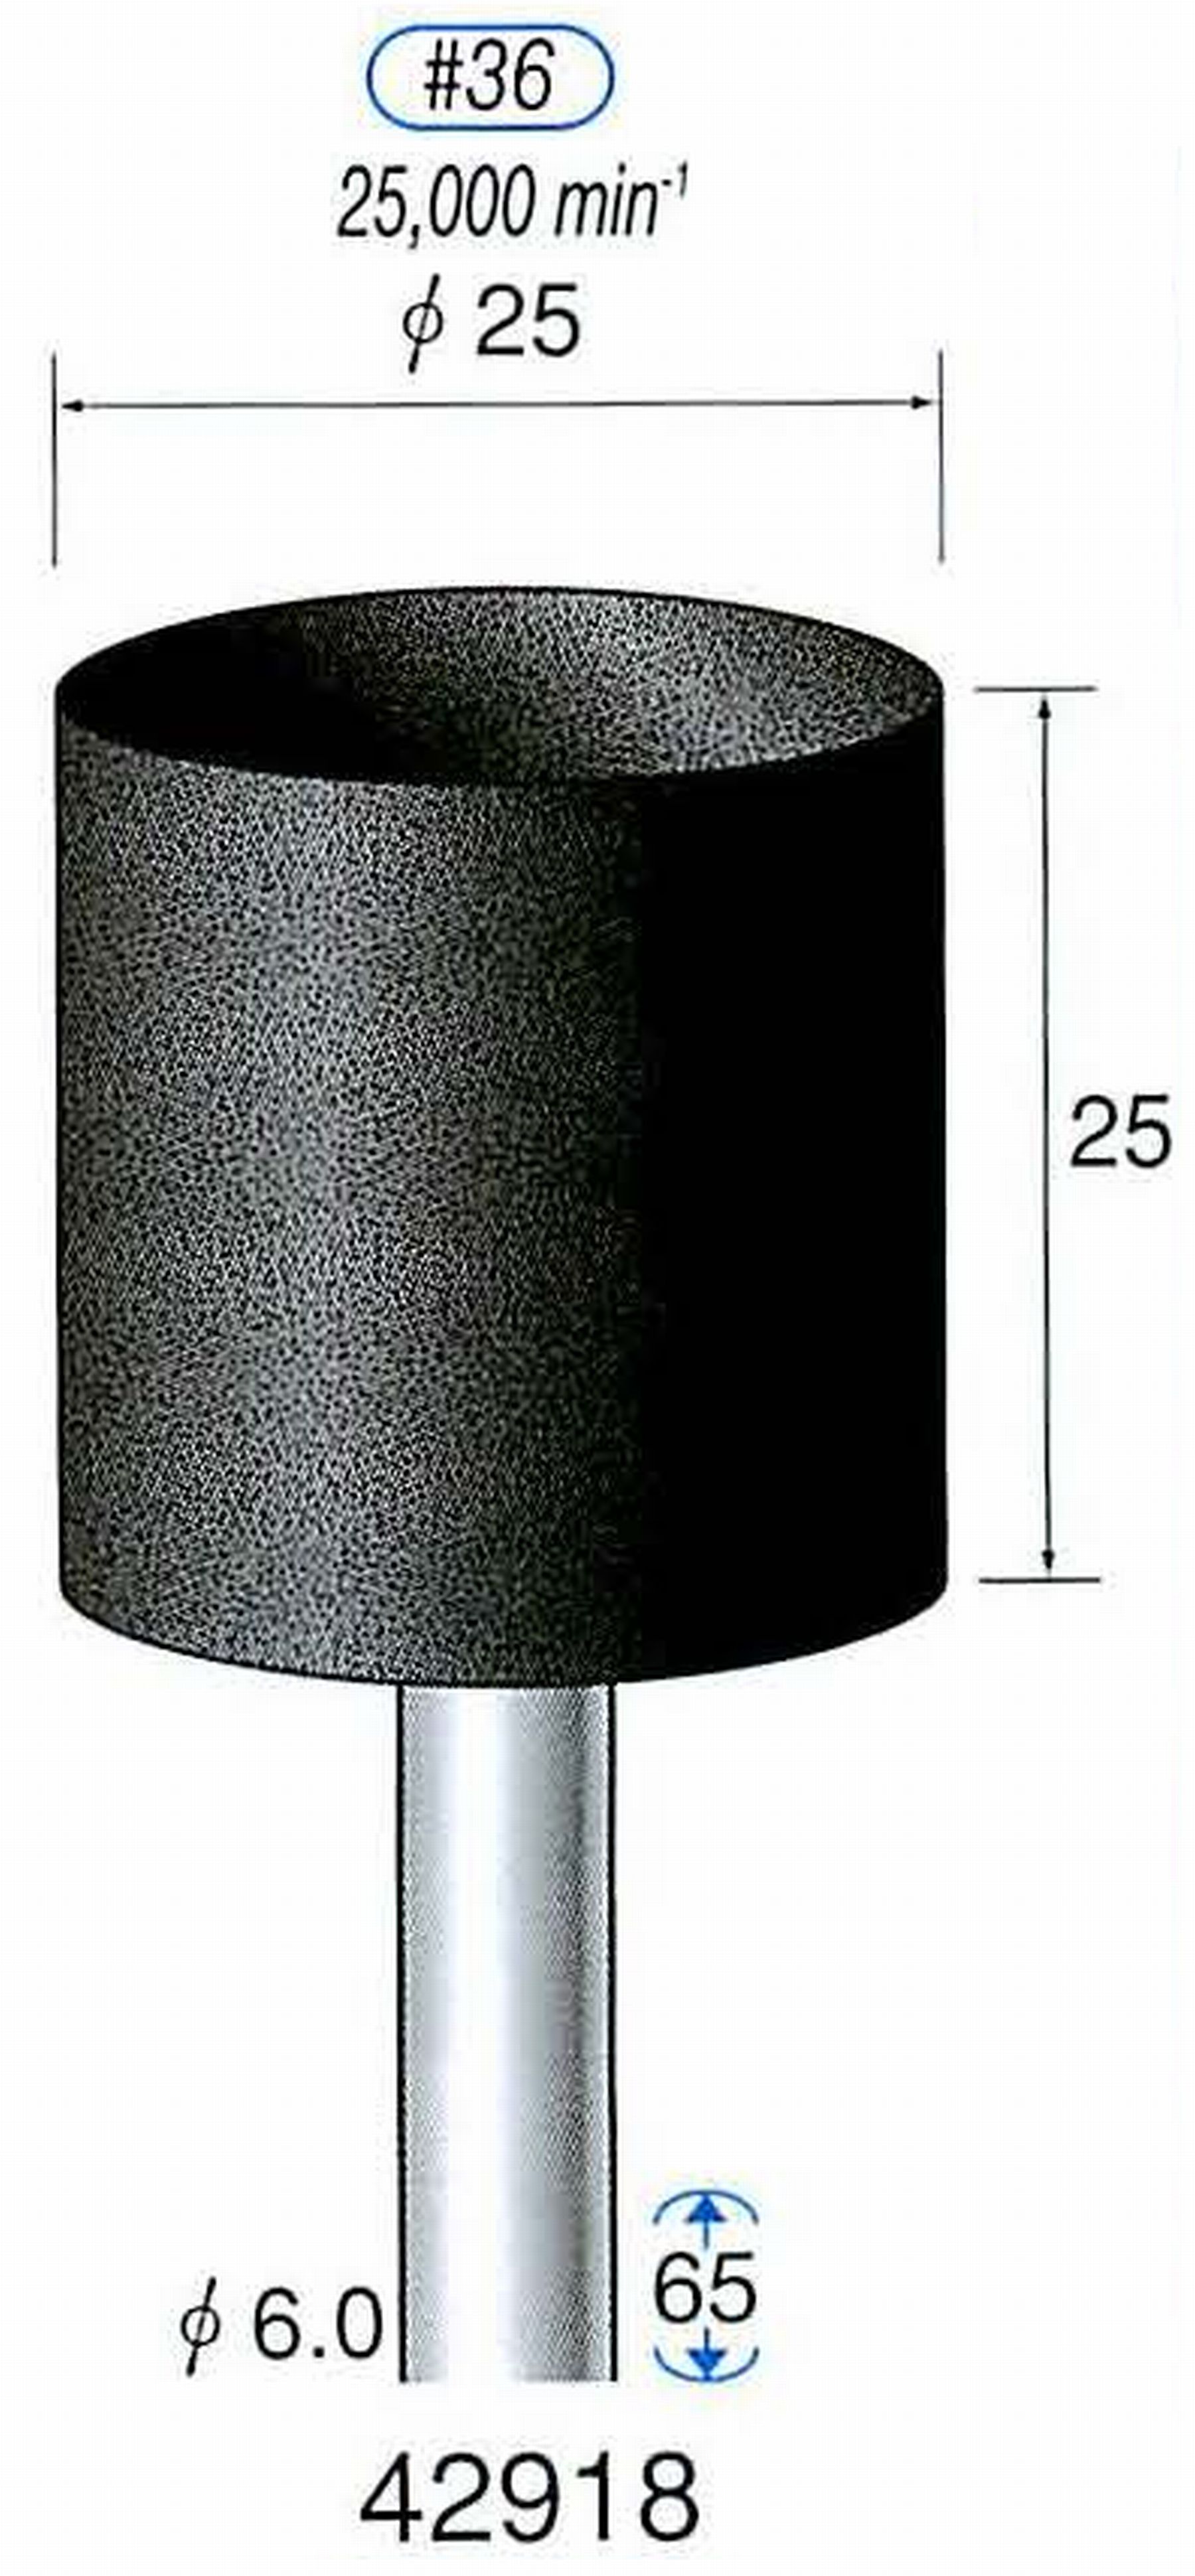 ナカニシ/NAKANISHI 軸付砥石(A砥粒) ブラック砥石 軸径(シャンク) φ6.0mm 42918